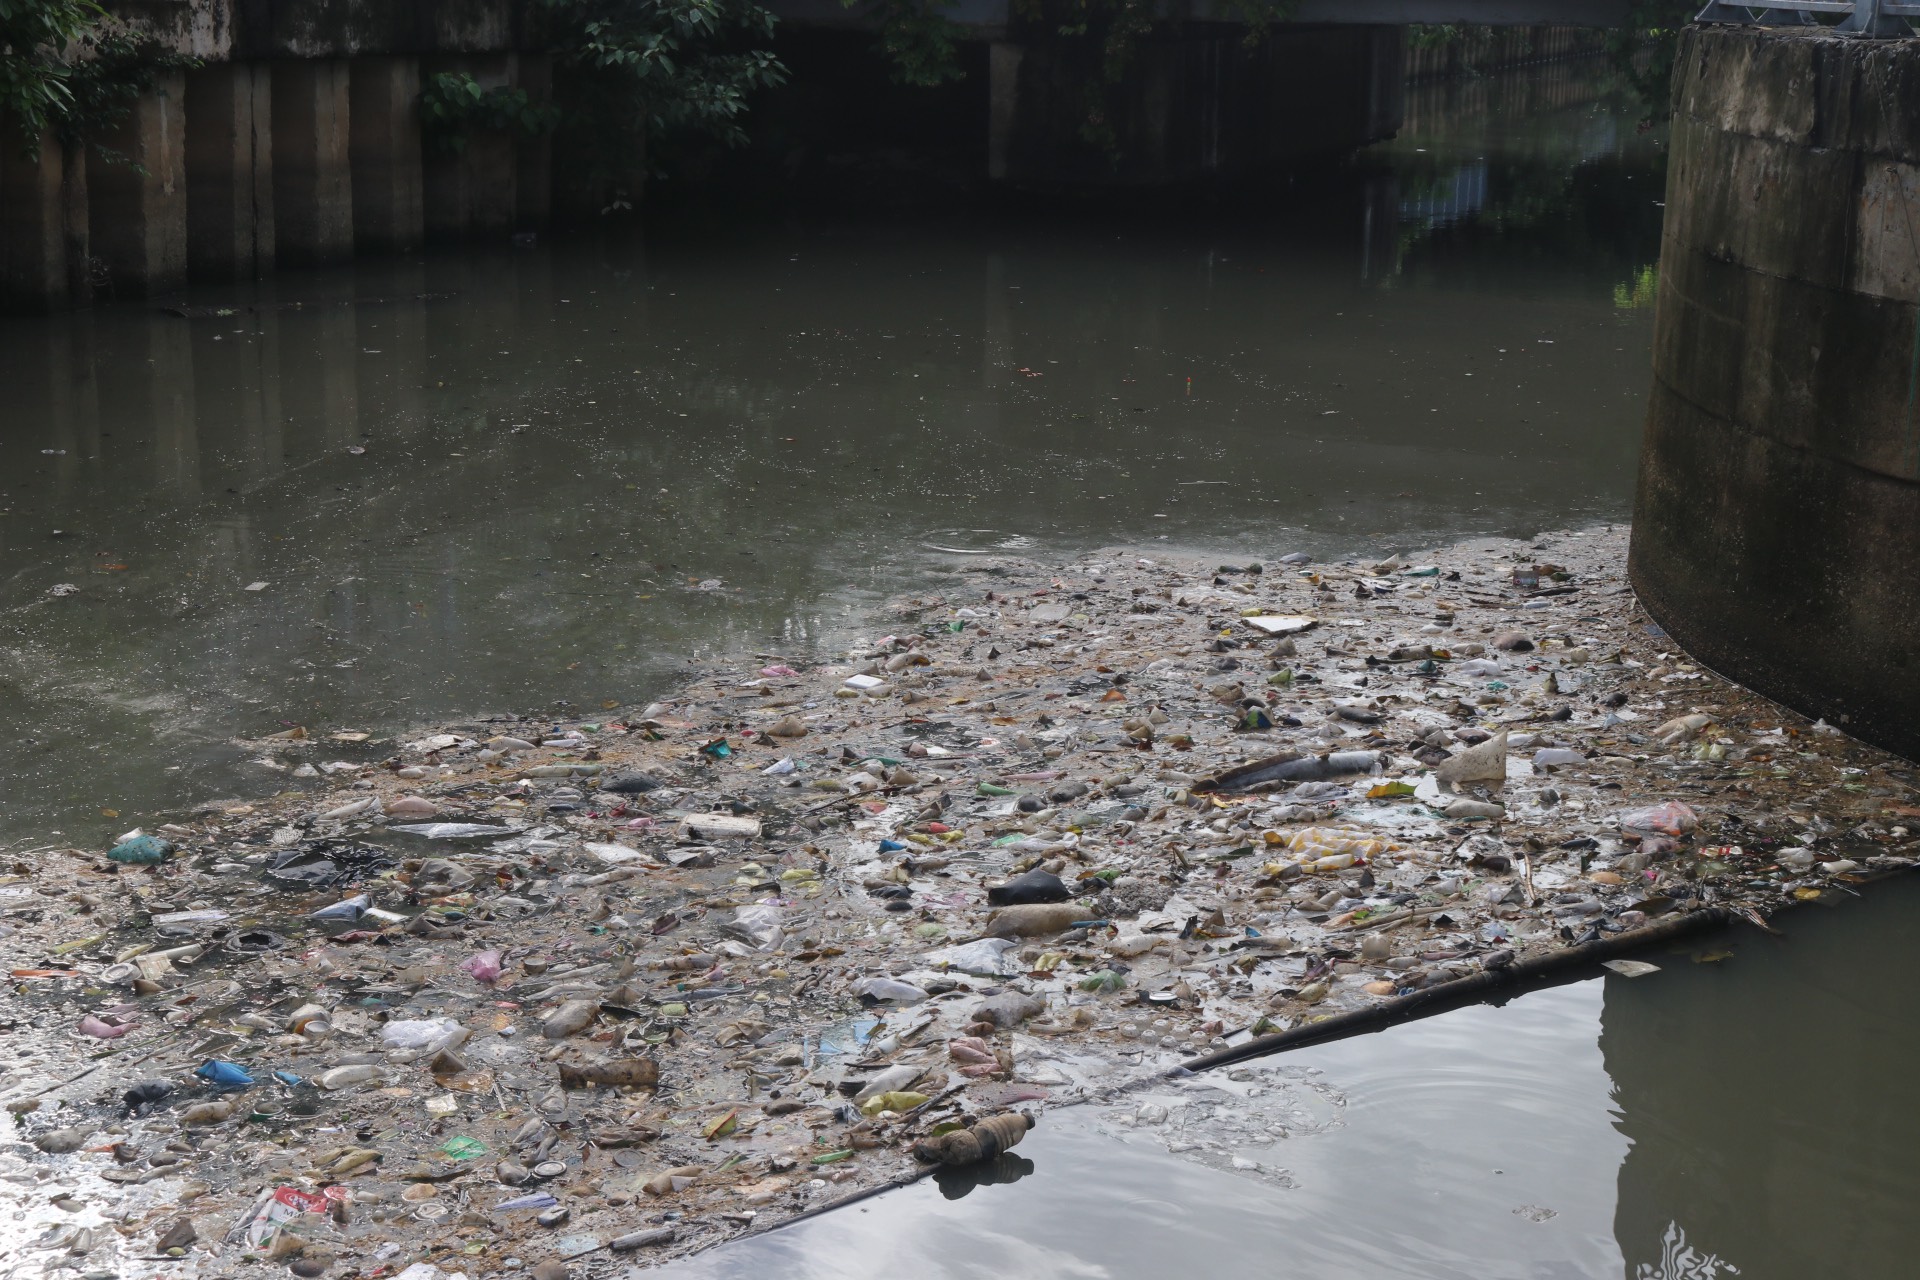 Sau mưa lớn, kênh Nhiêu Lộc - Thị Nghè đầy rác thải, xác động vật chết - Ảnh 2.